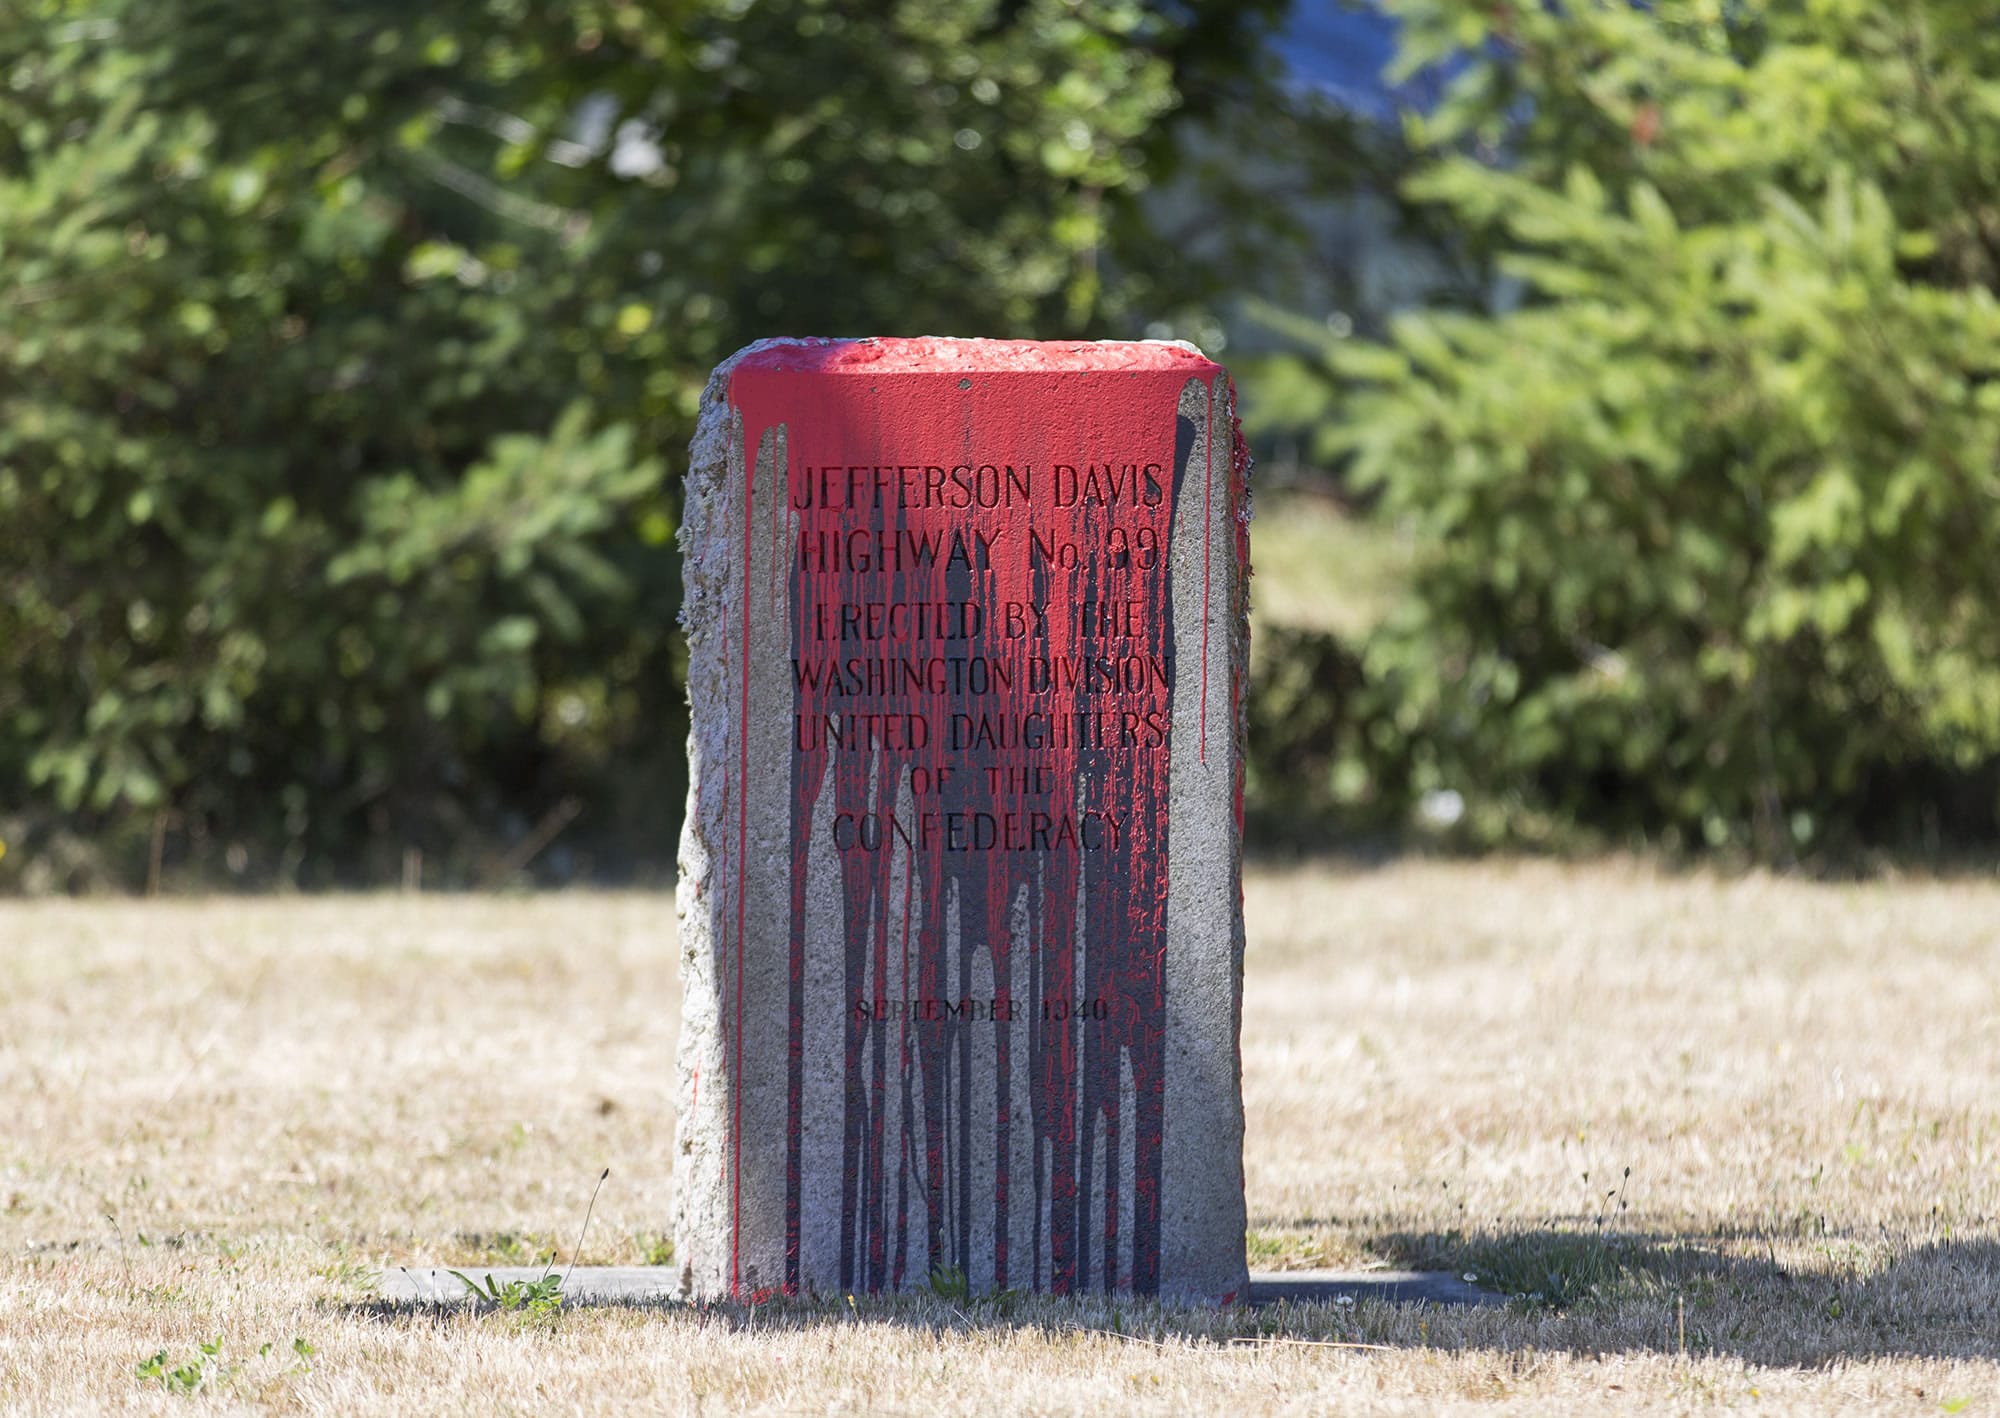 Jefferson Davis highway markers were vandalized at Jefferson Davis Park in Ridgefield, seen Friday afternoon.